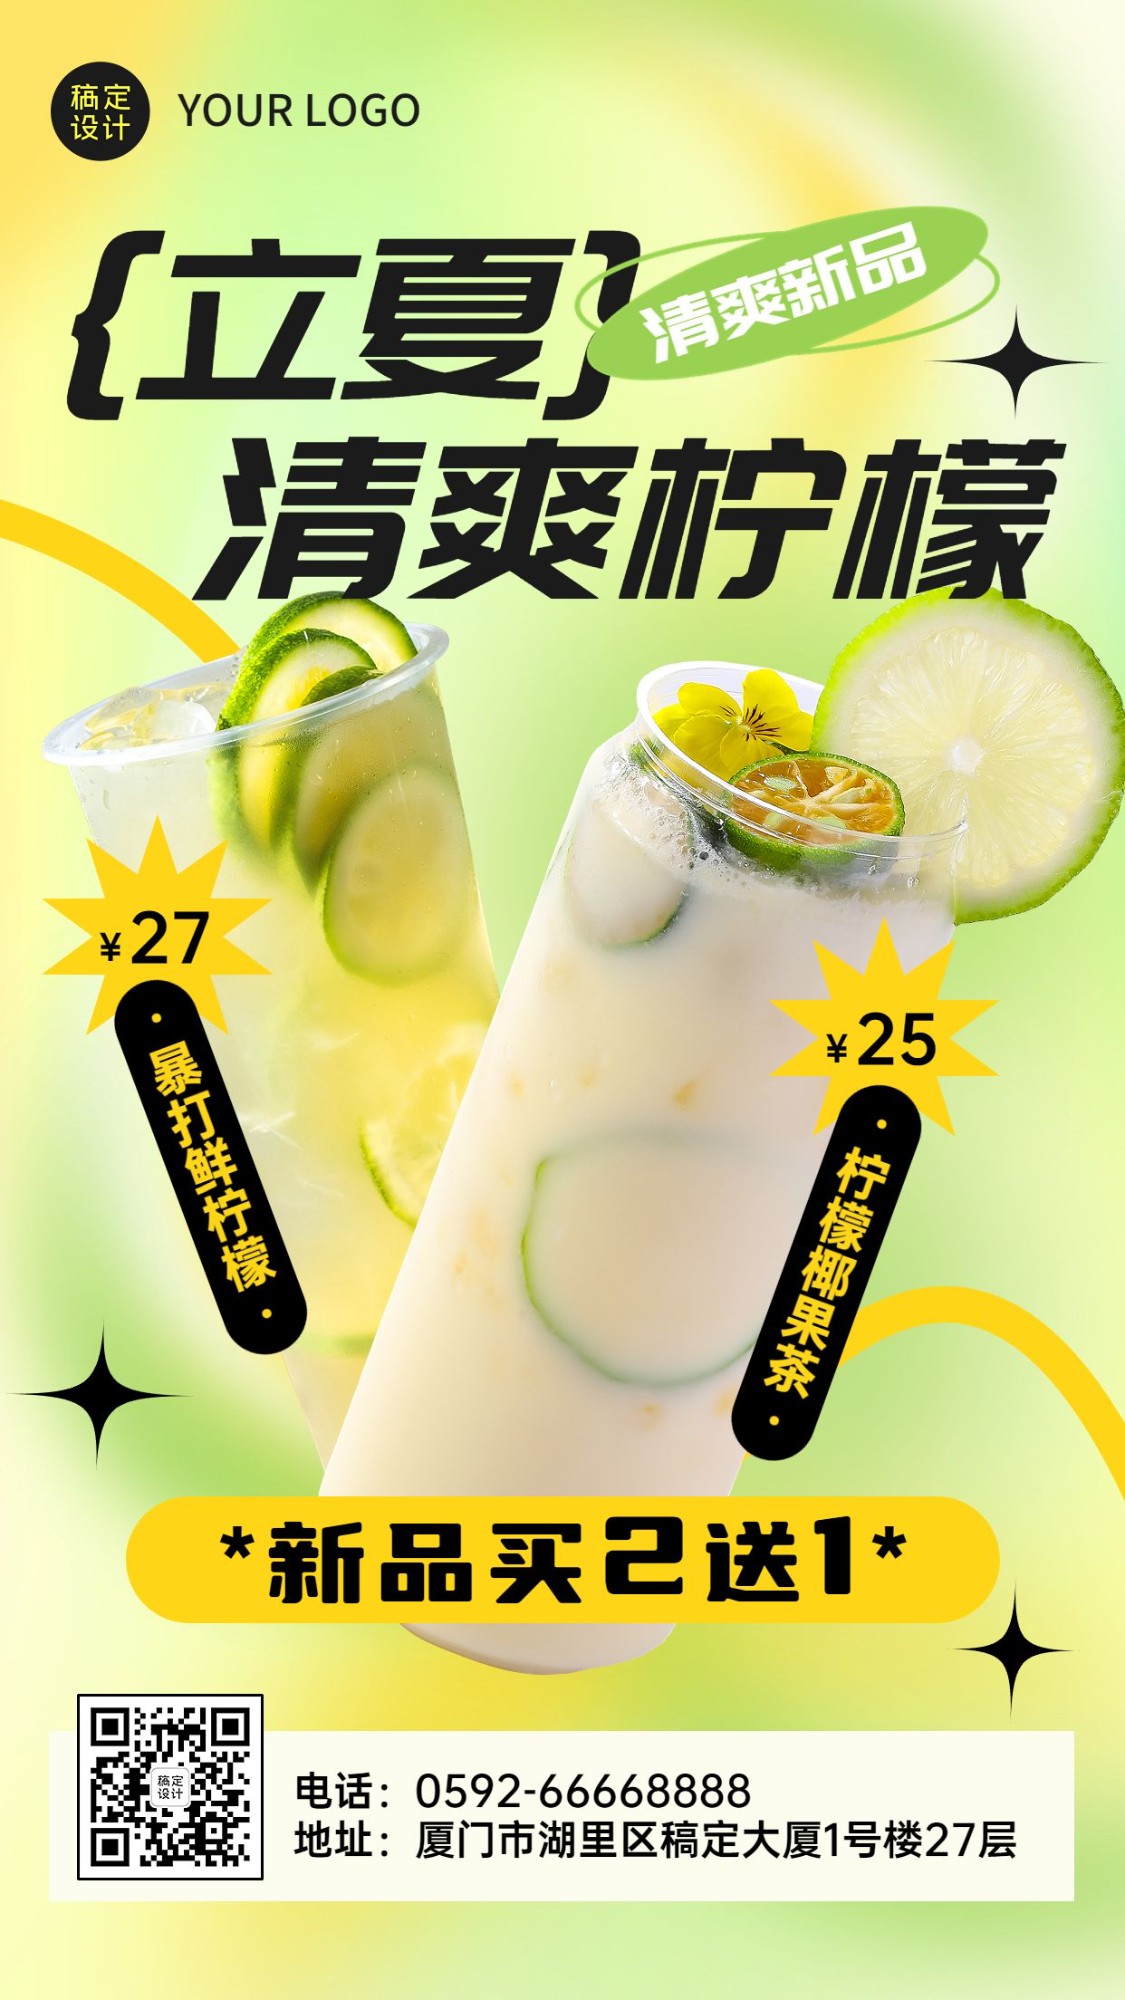 立夏餐饮果汁饮品产品营销手机海报预览效果